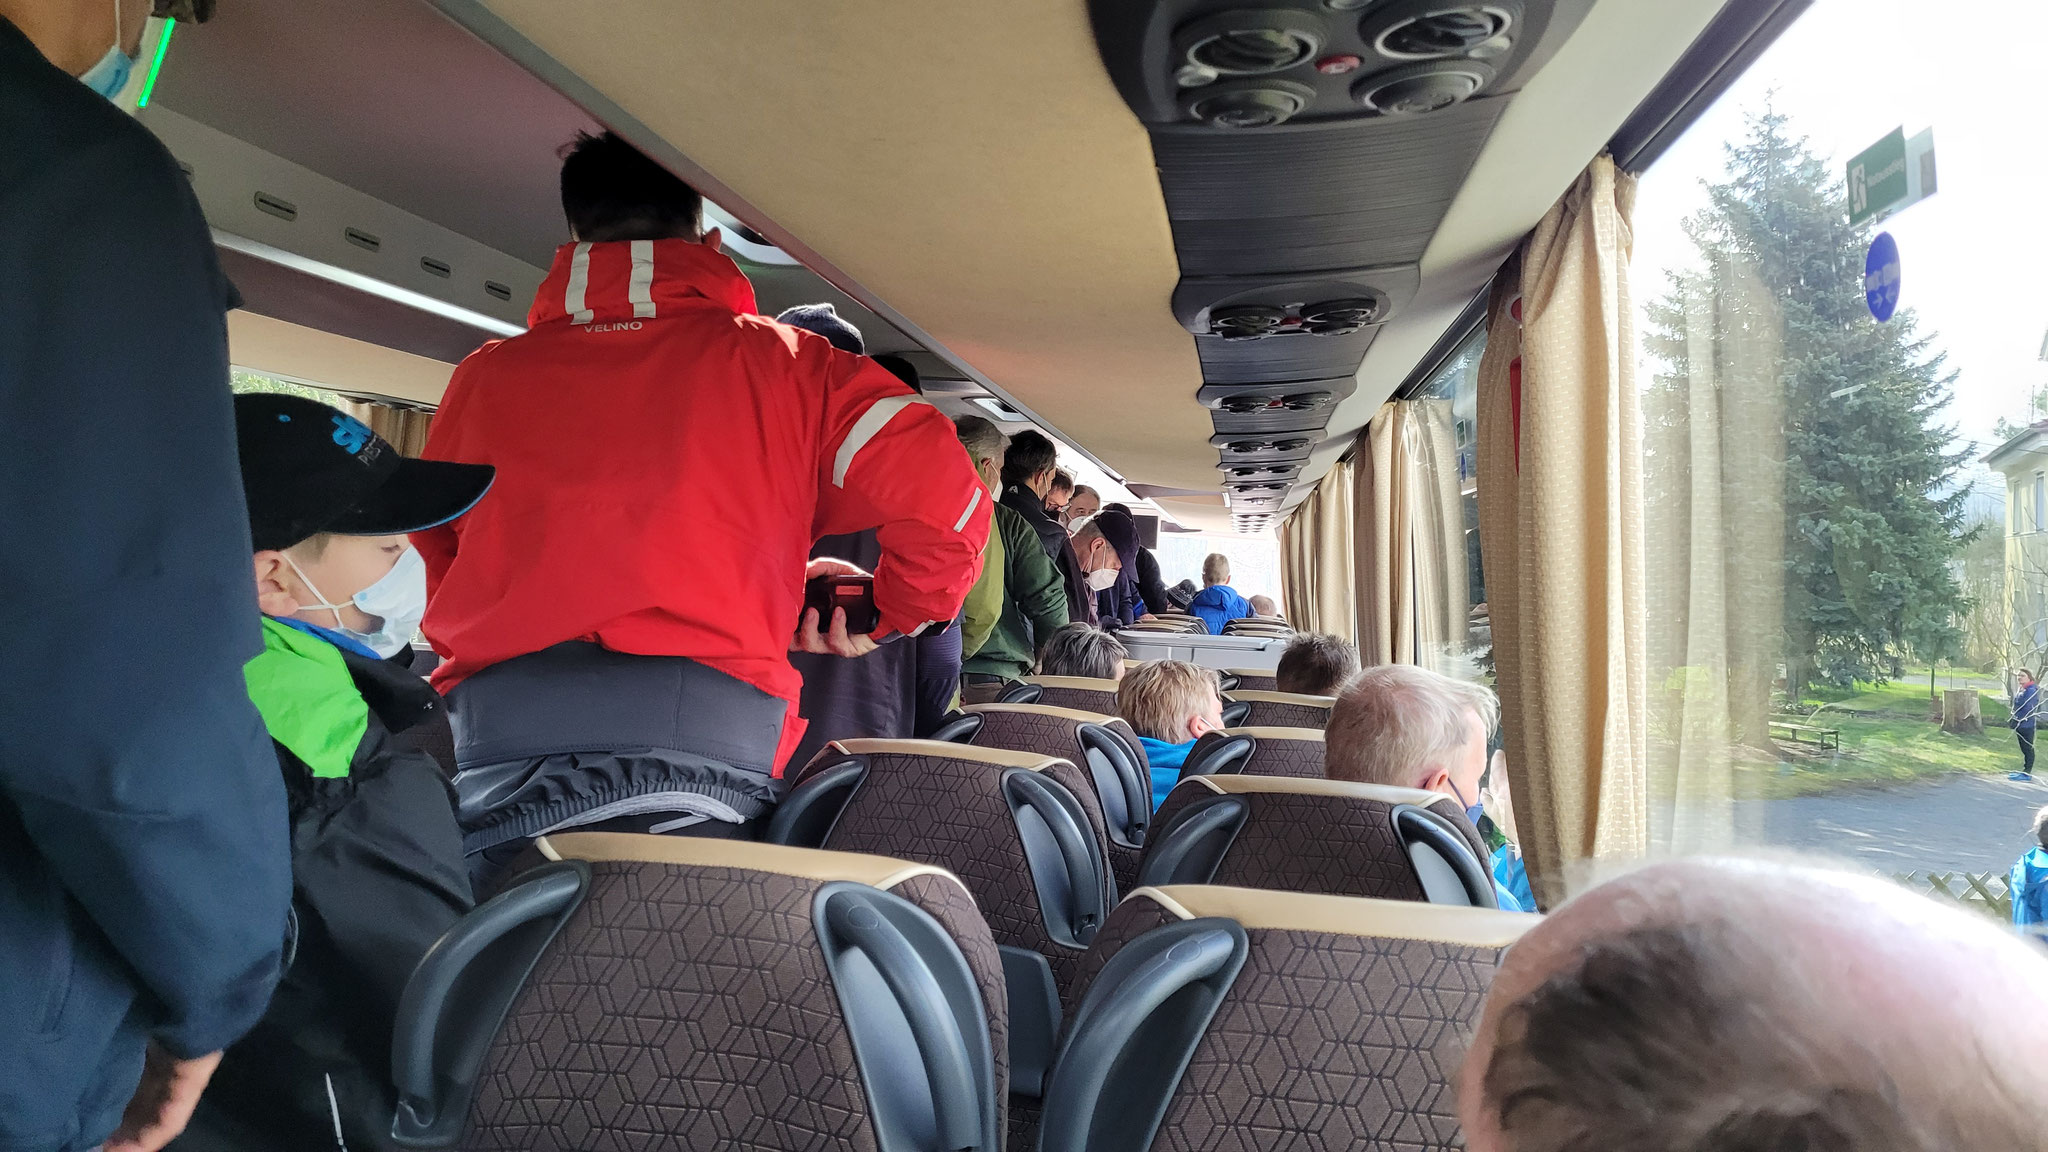 Bustransfer von Grimma nach Leisnig um PKW und Bootsanhänger vor zubringen. 